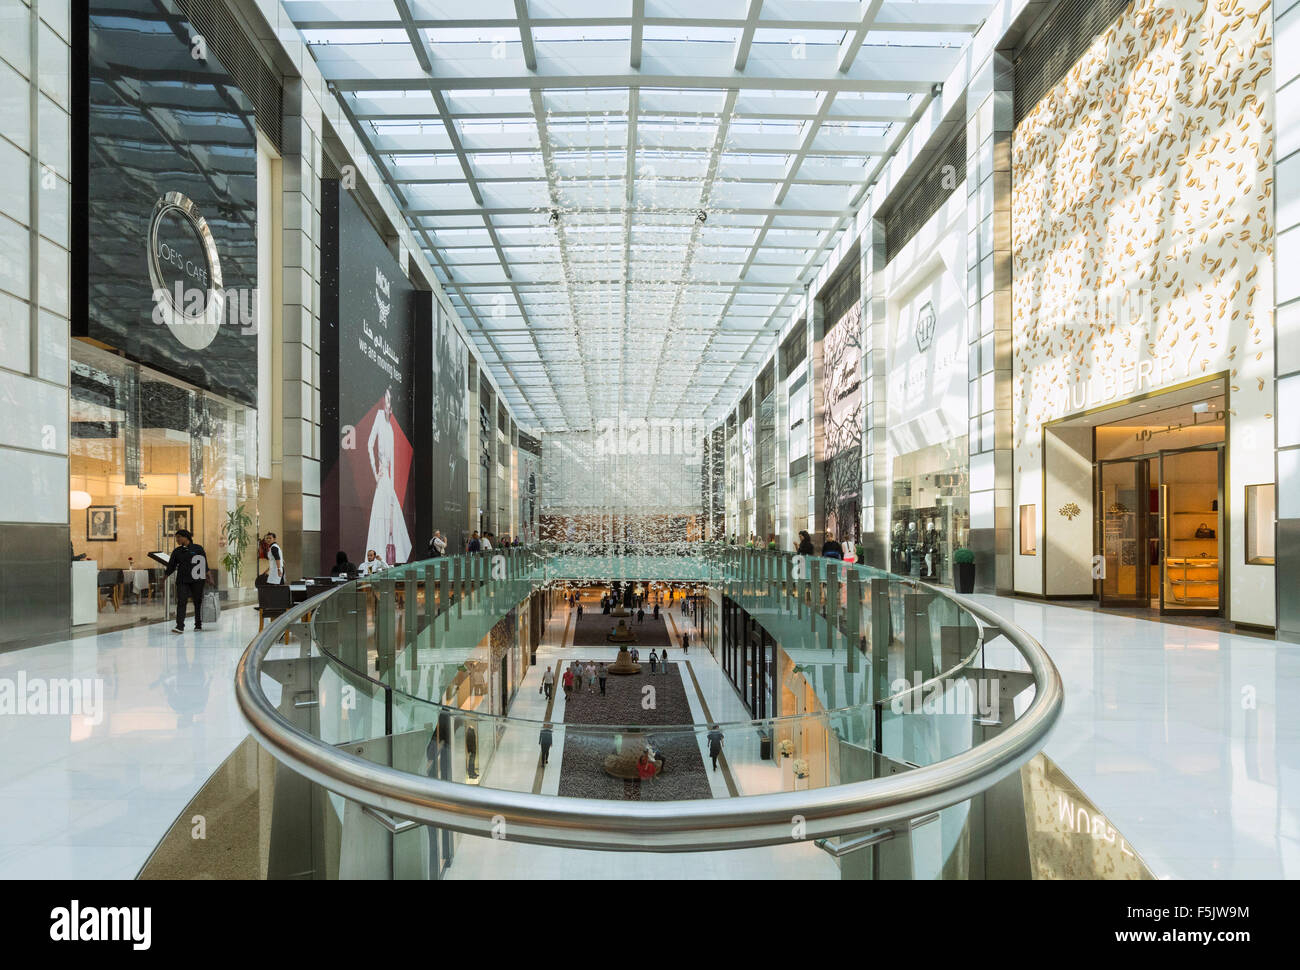 Interior of atrium at Fashion Avenue in Dubai United Arab Emirates Stock Photo